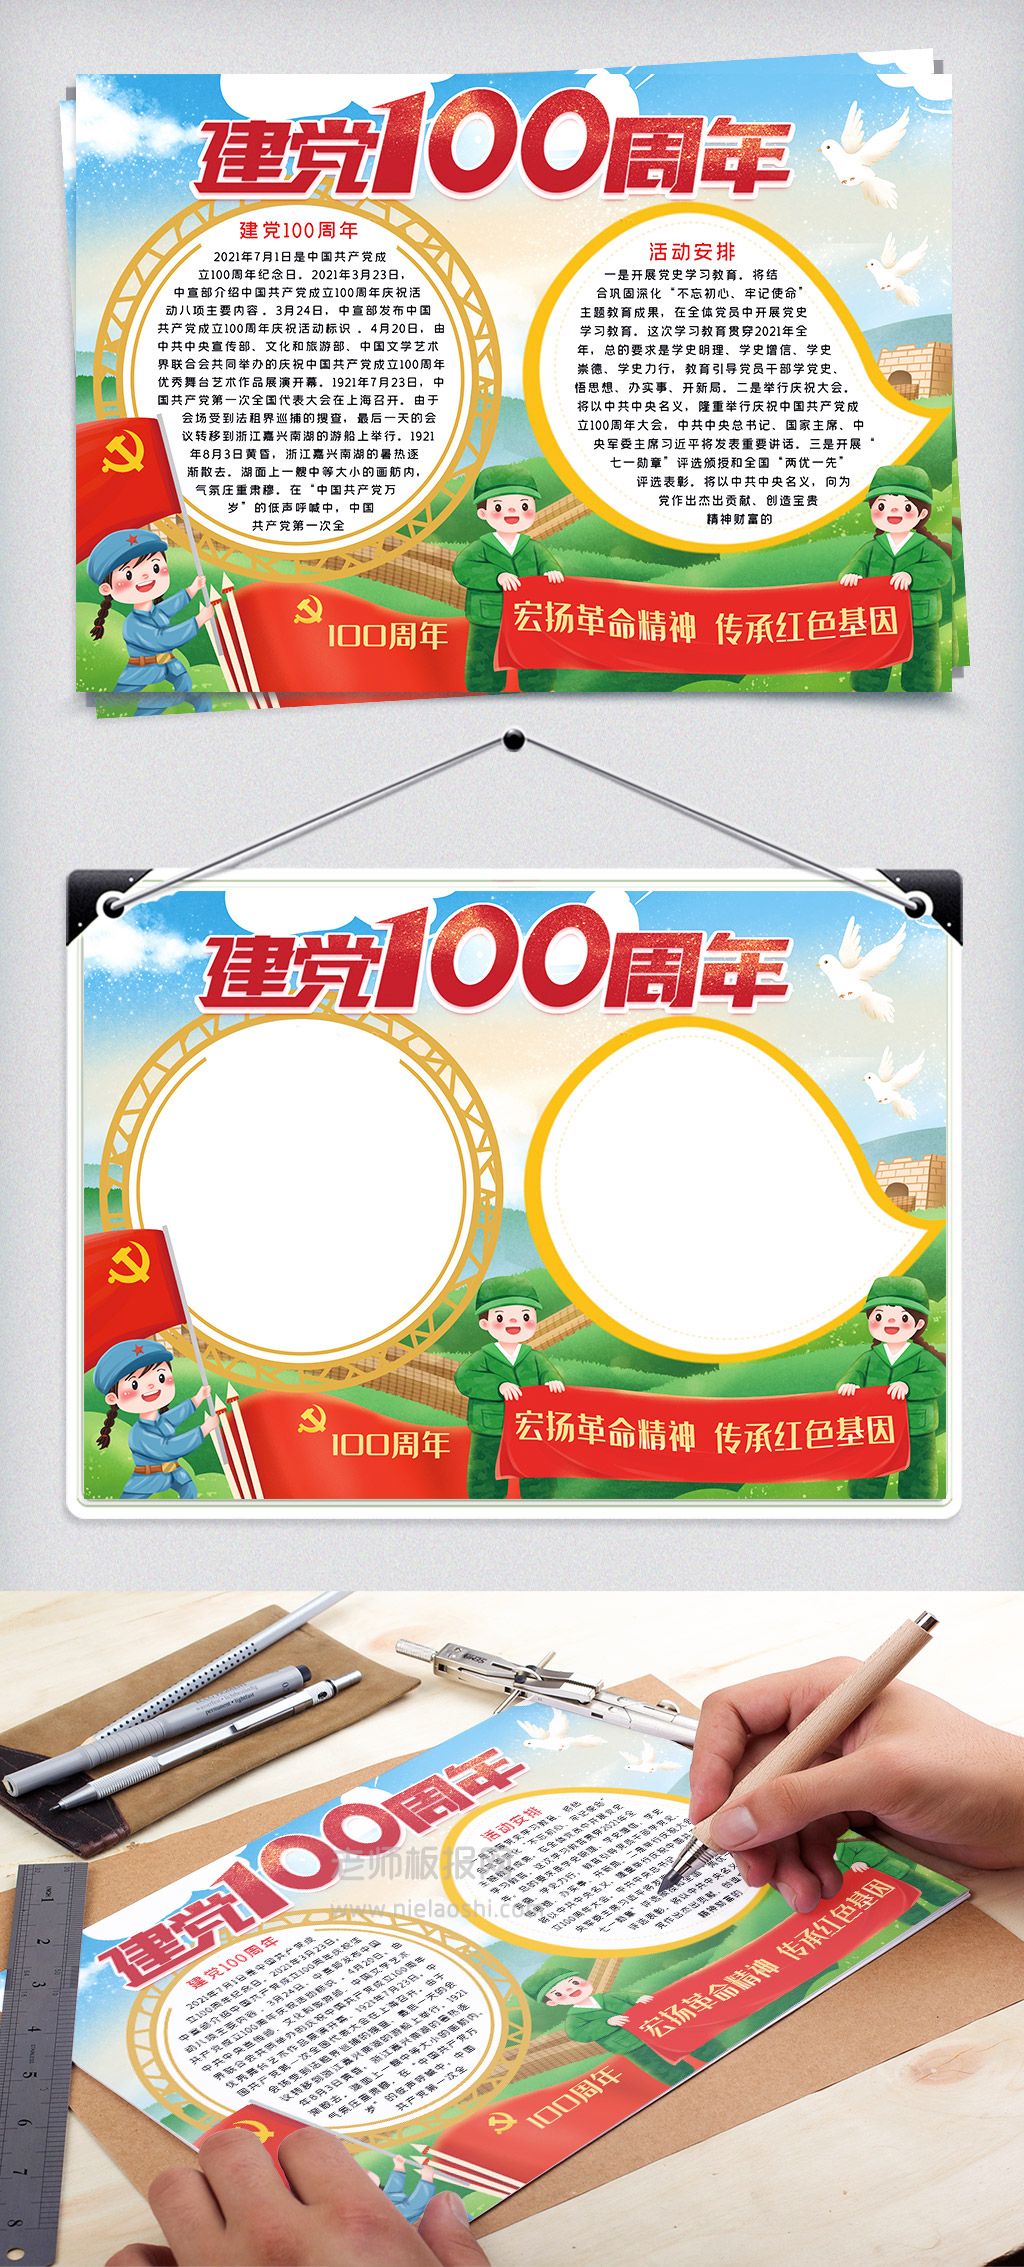 建党100周年传承红色基因电子小报word手抄报模板